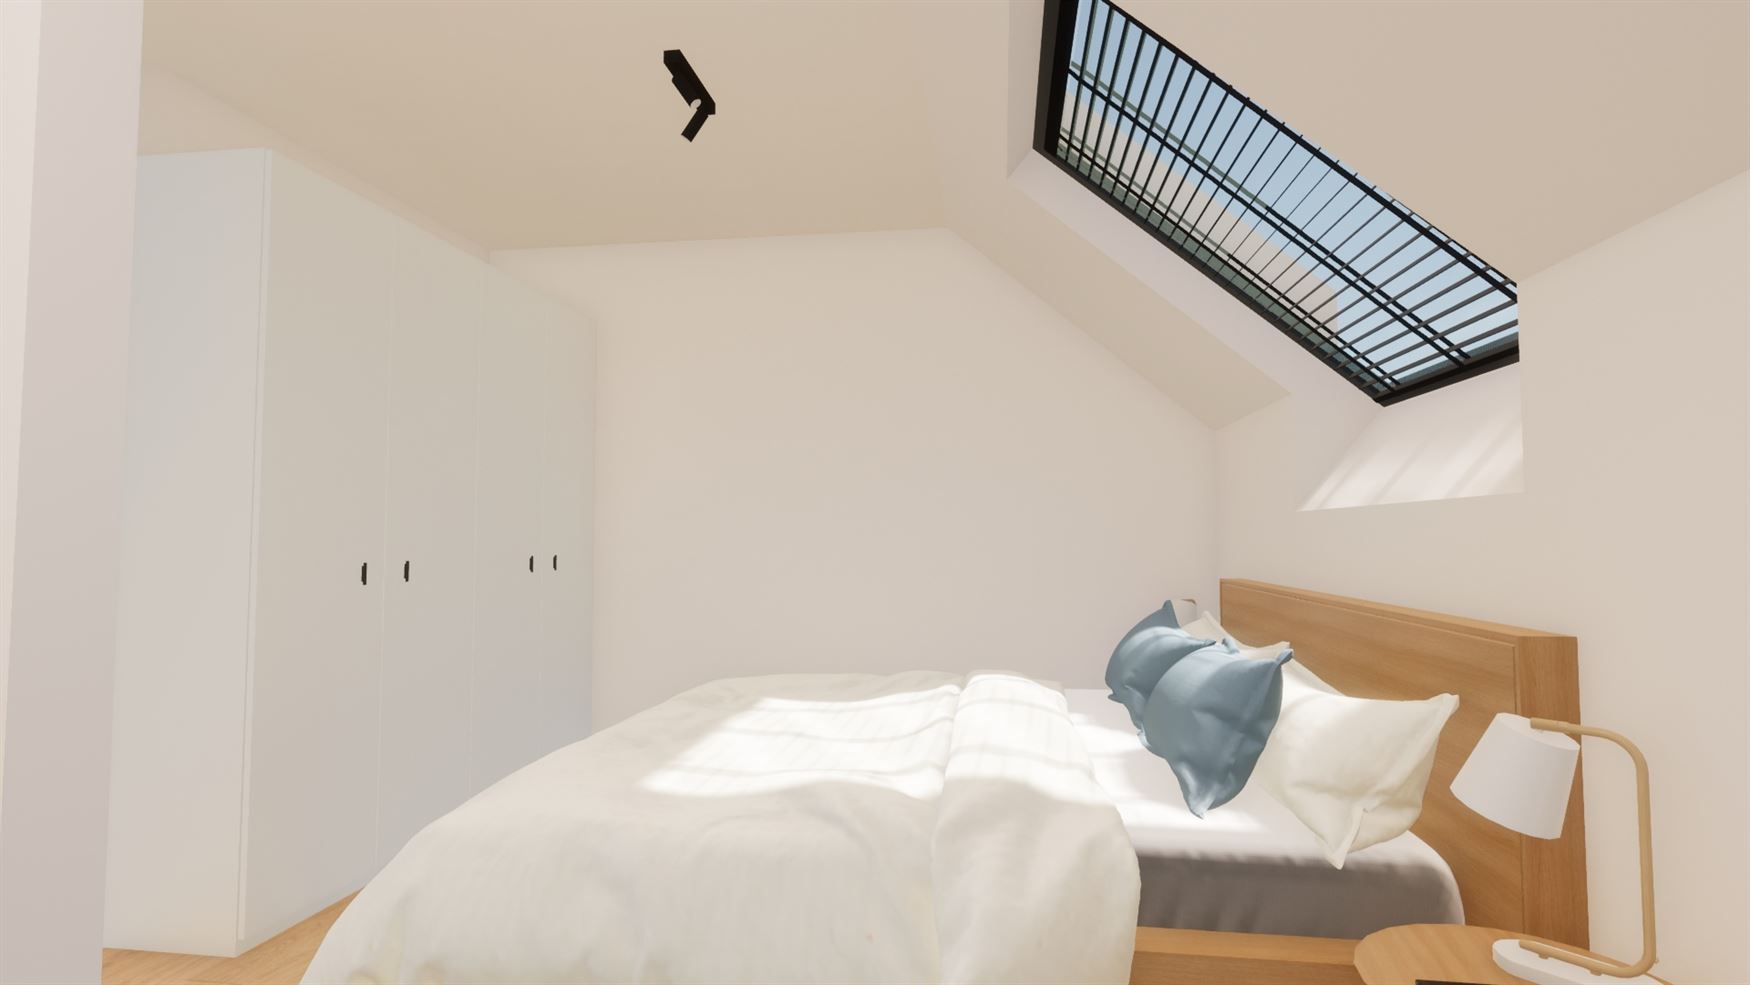 Appartement 113A (108 m²) bevindt zich op het gelijkvloers, heeft 2 slaapkamers en een tuin + terras van 61 m².
Mogelijkheid tot aankoop van een ca...